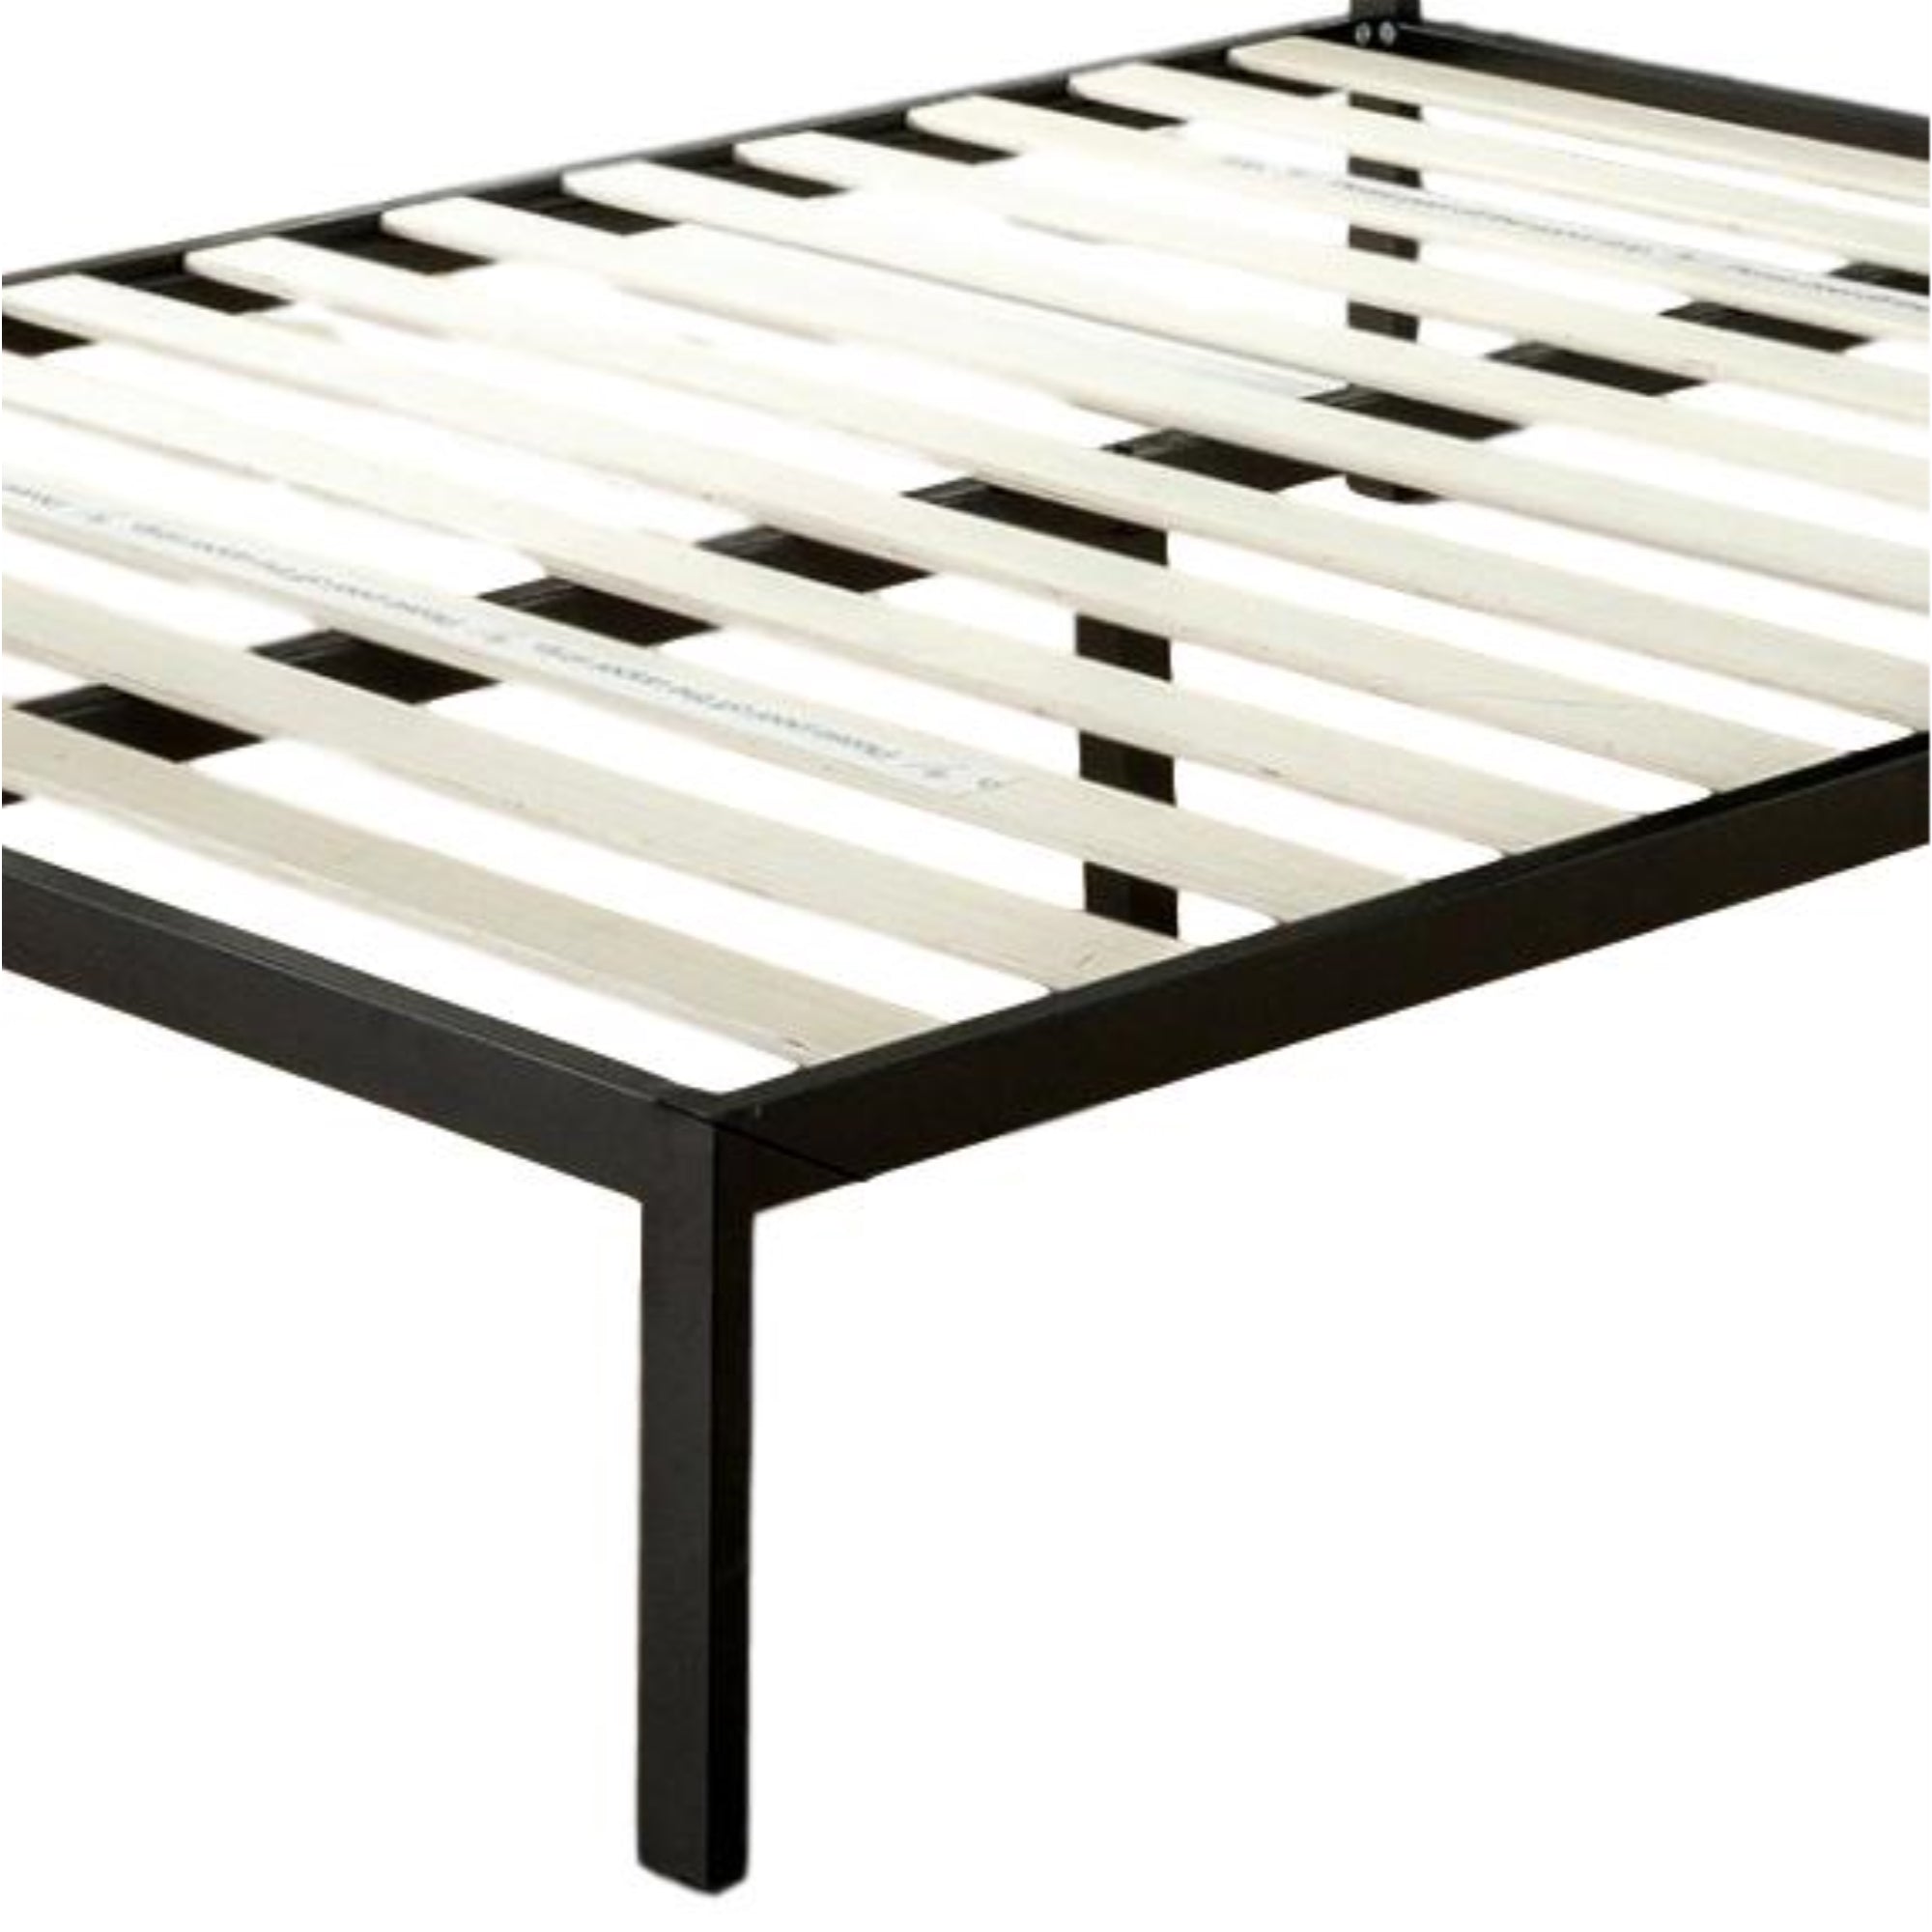 ViscoLogic Platform Metal Bed with 8